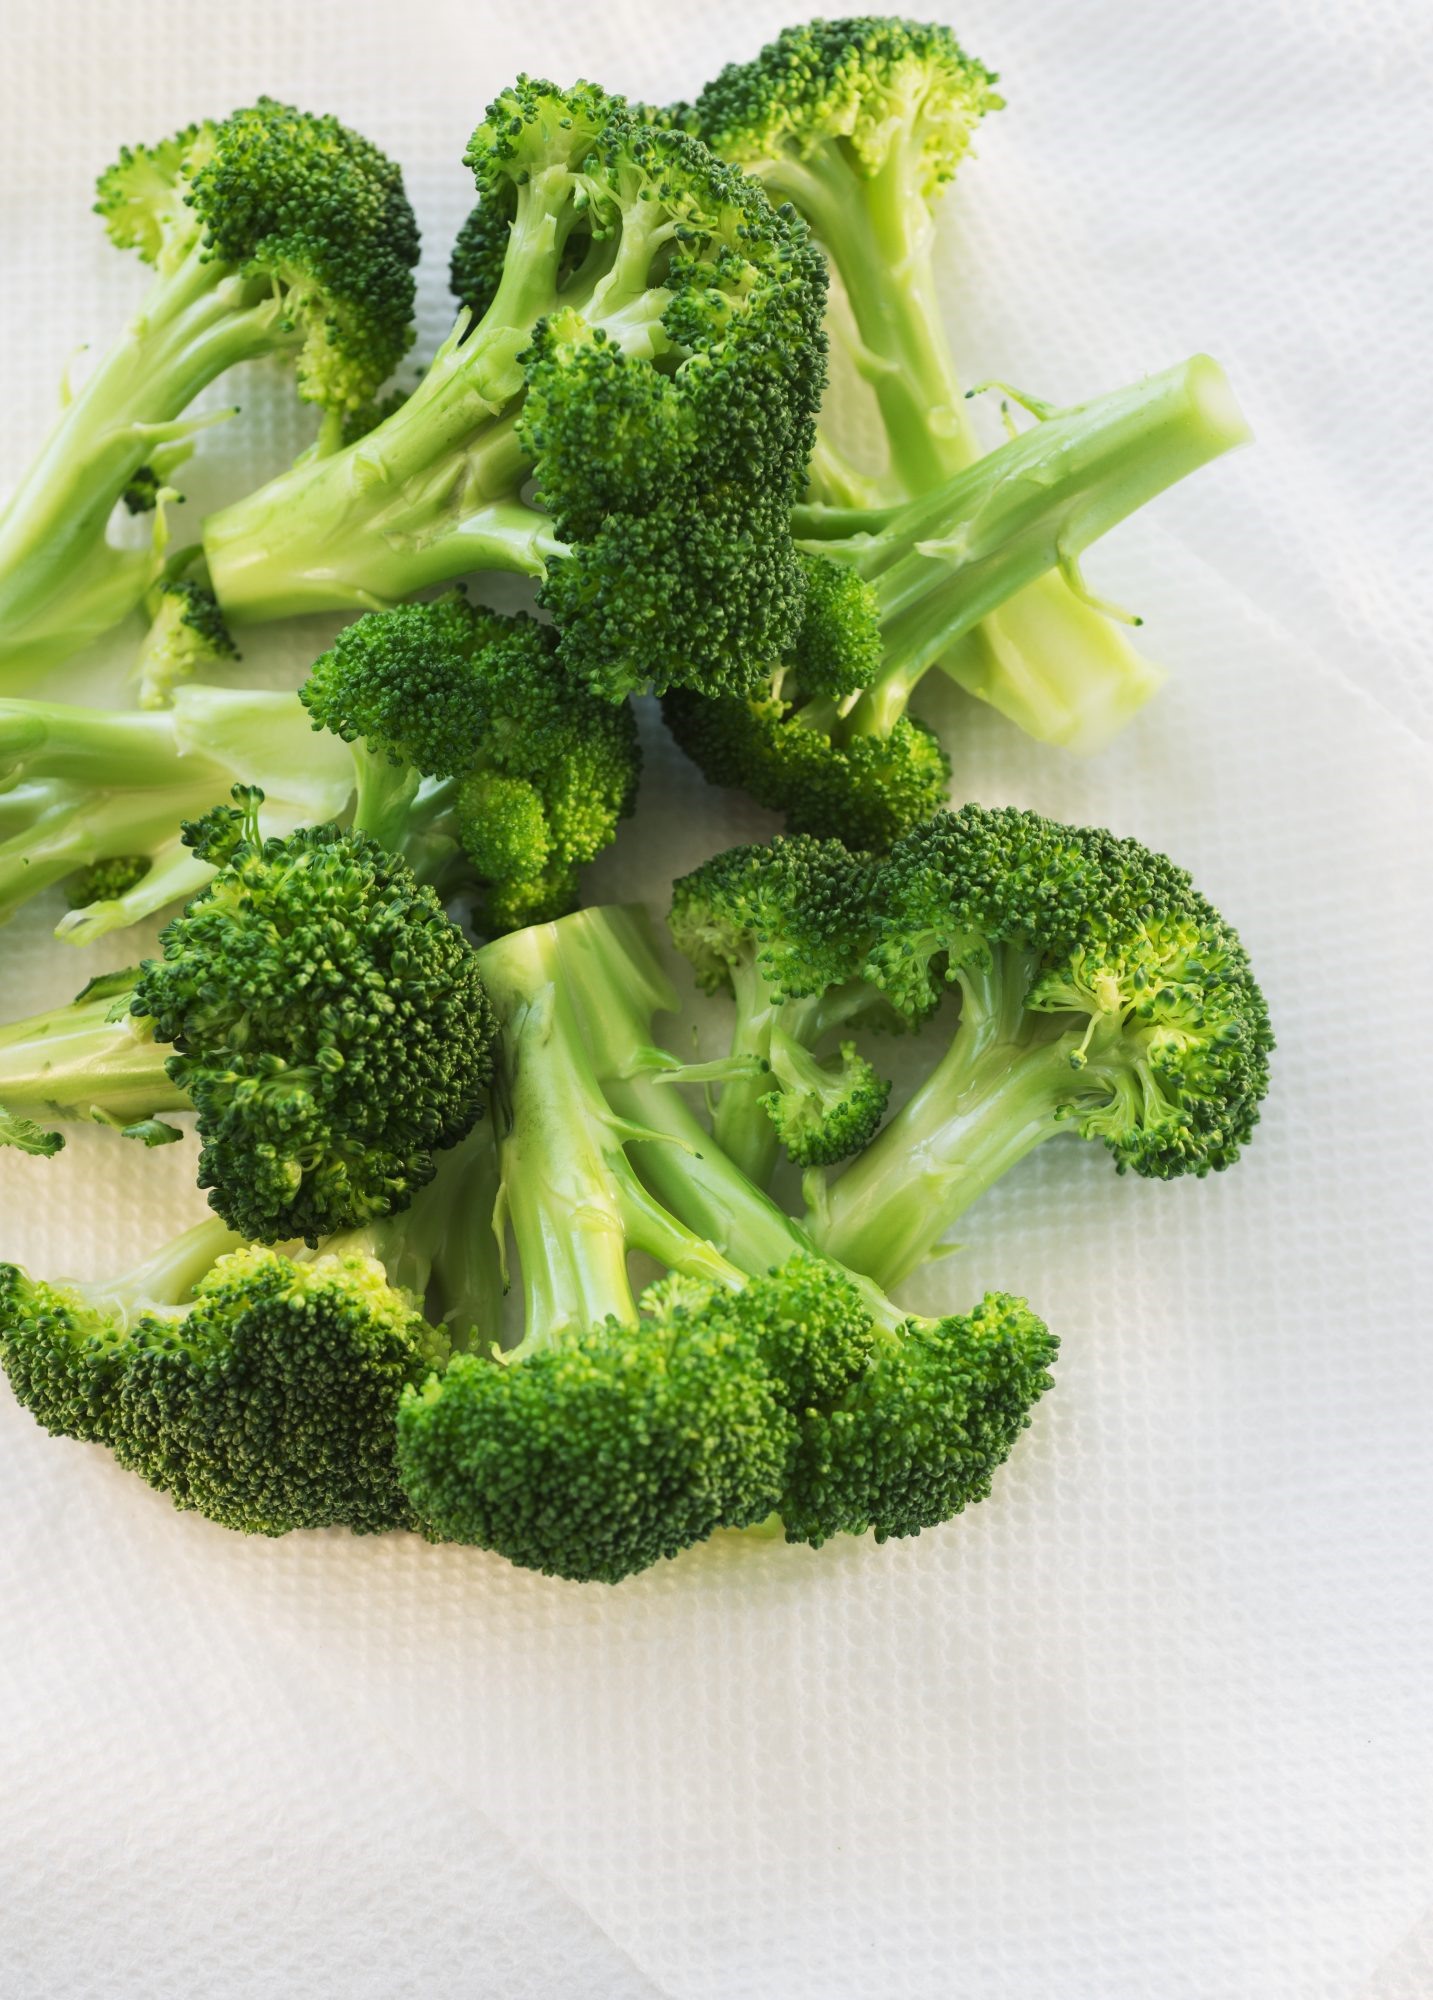 5. Súp lơ xanh  Loại rau họ cải này cung cấp 132 mg vitamin C cộng với một cú đấm làm đầy chất xơ chỉ với 30 calo mỗi khẩu phần. Thêm vào đó, nghiên cứu cho thấy bông cải xanh có thể có đặc tính ngăn ngừa ung thư.